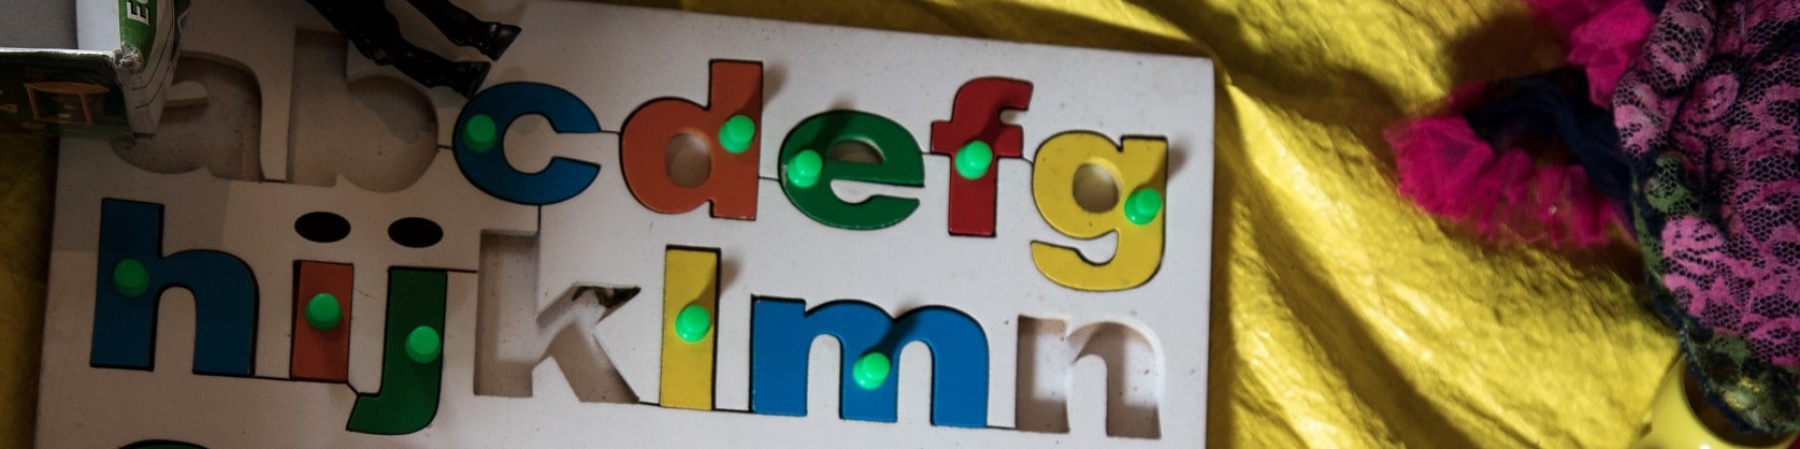 tabellone per bambini con lettere dell'alfabeto colorate estraibili poggiato su un lenzuolo giallo